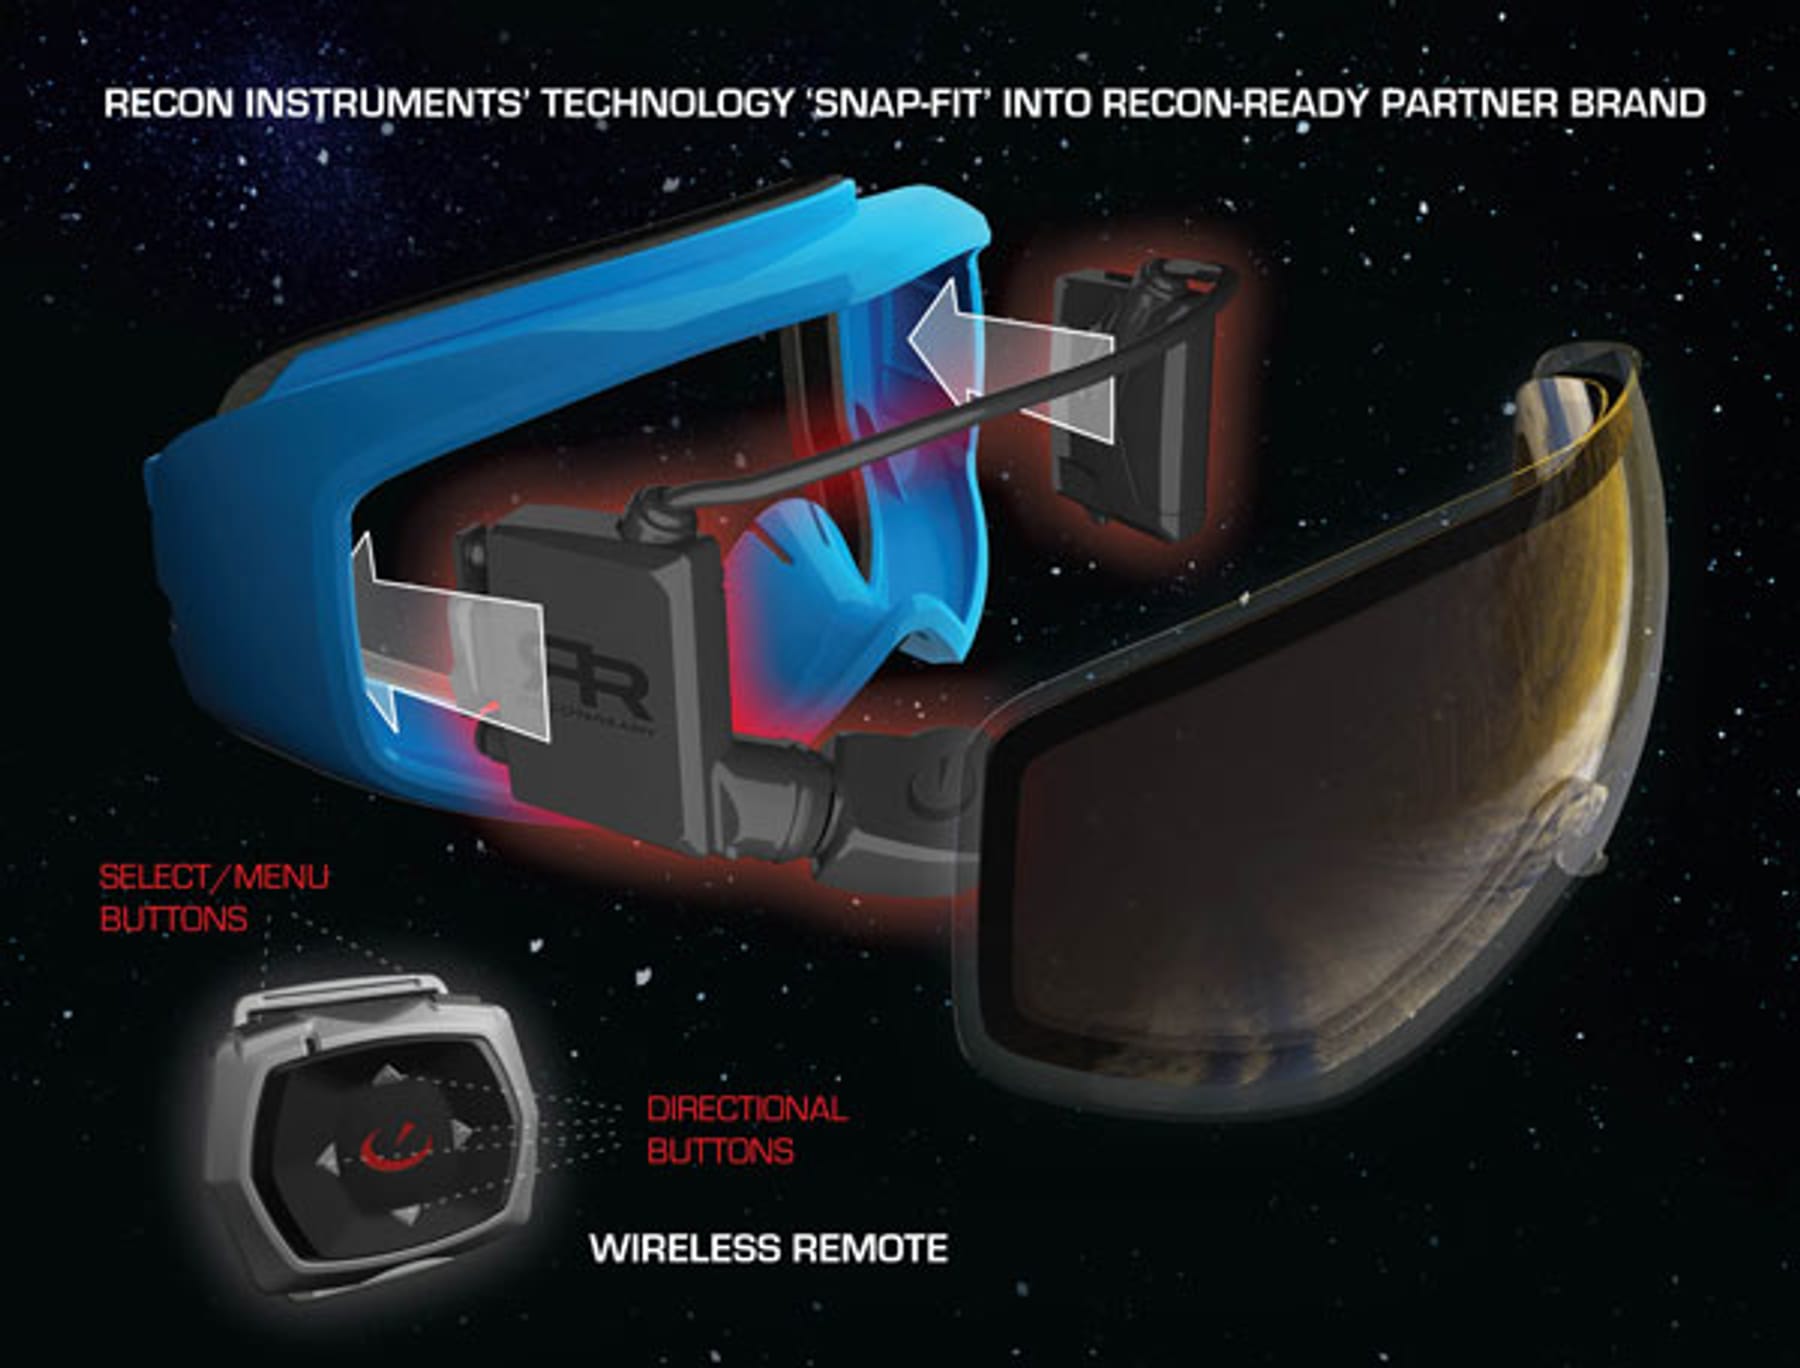 NEU: Taktik-System für Regatta (Sonnenbrille, Head-Up-Display) by